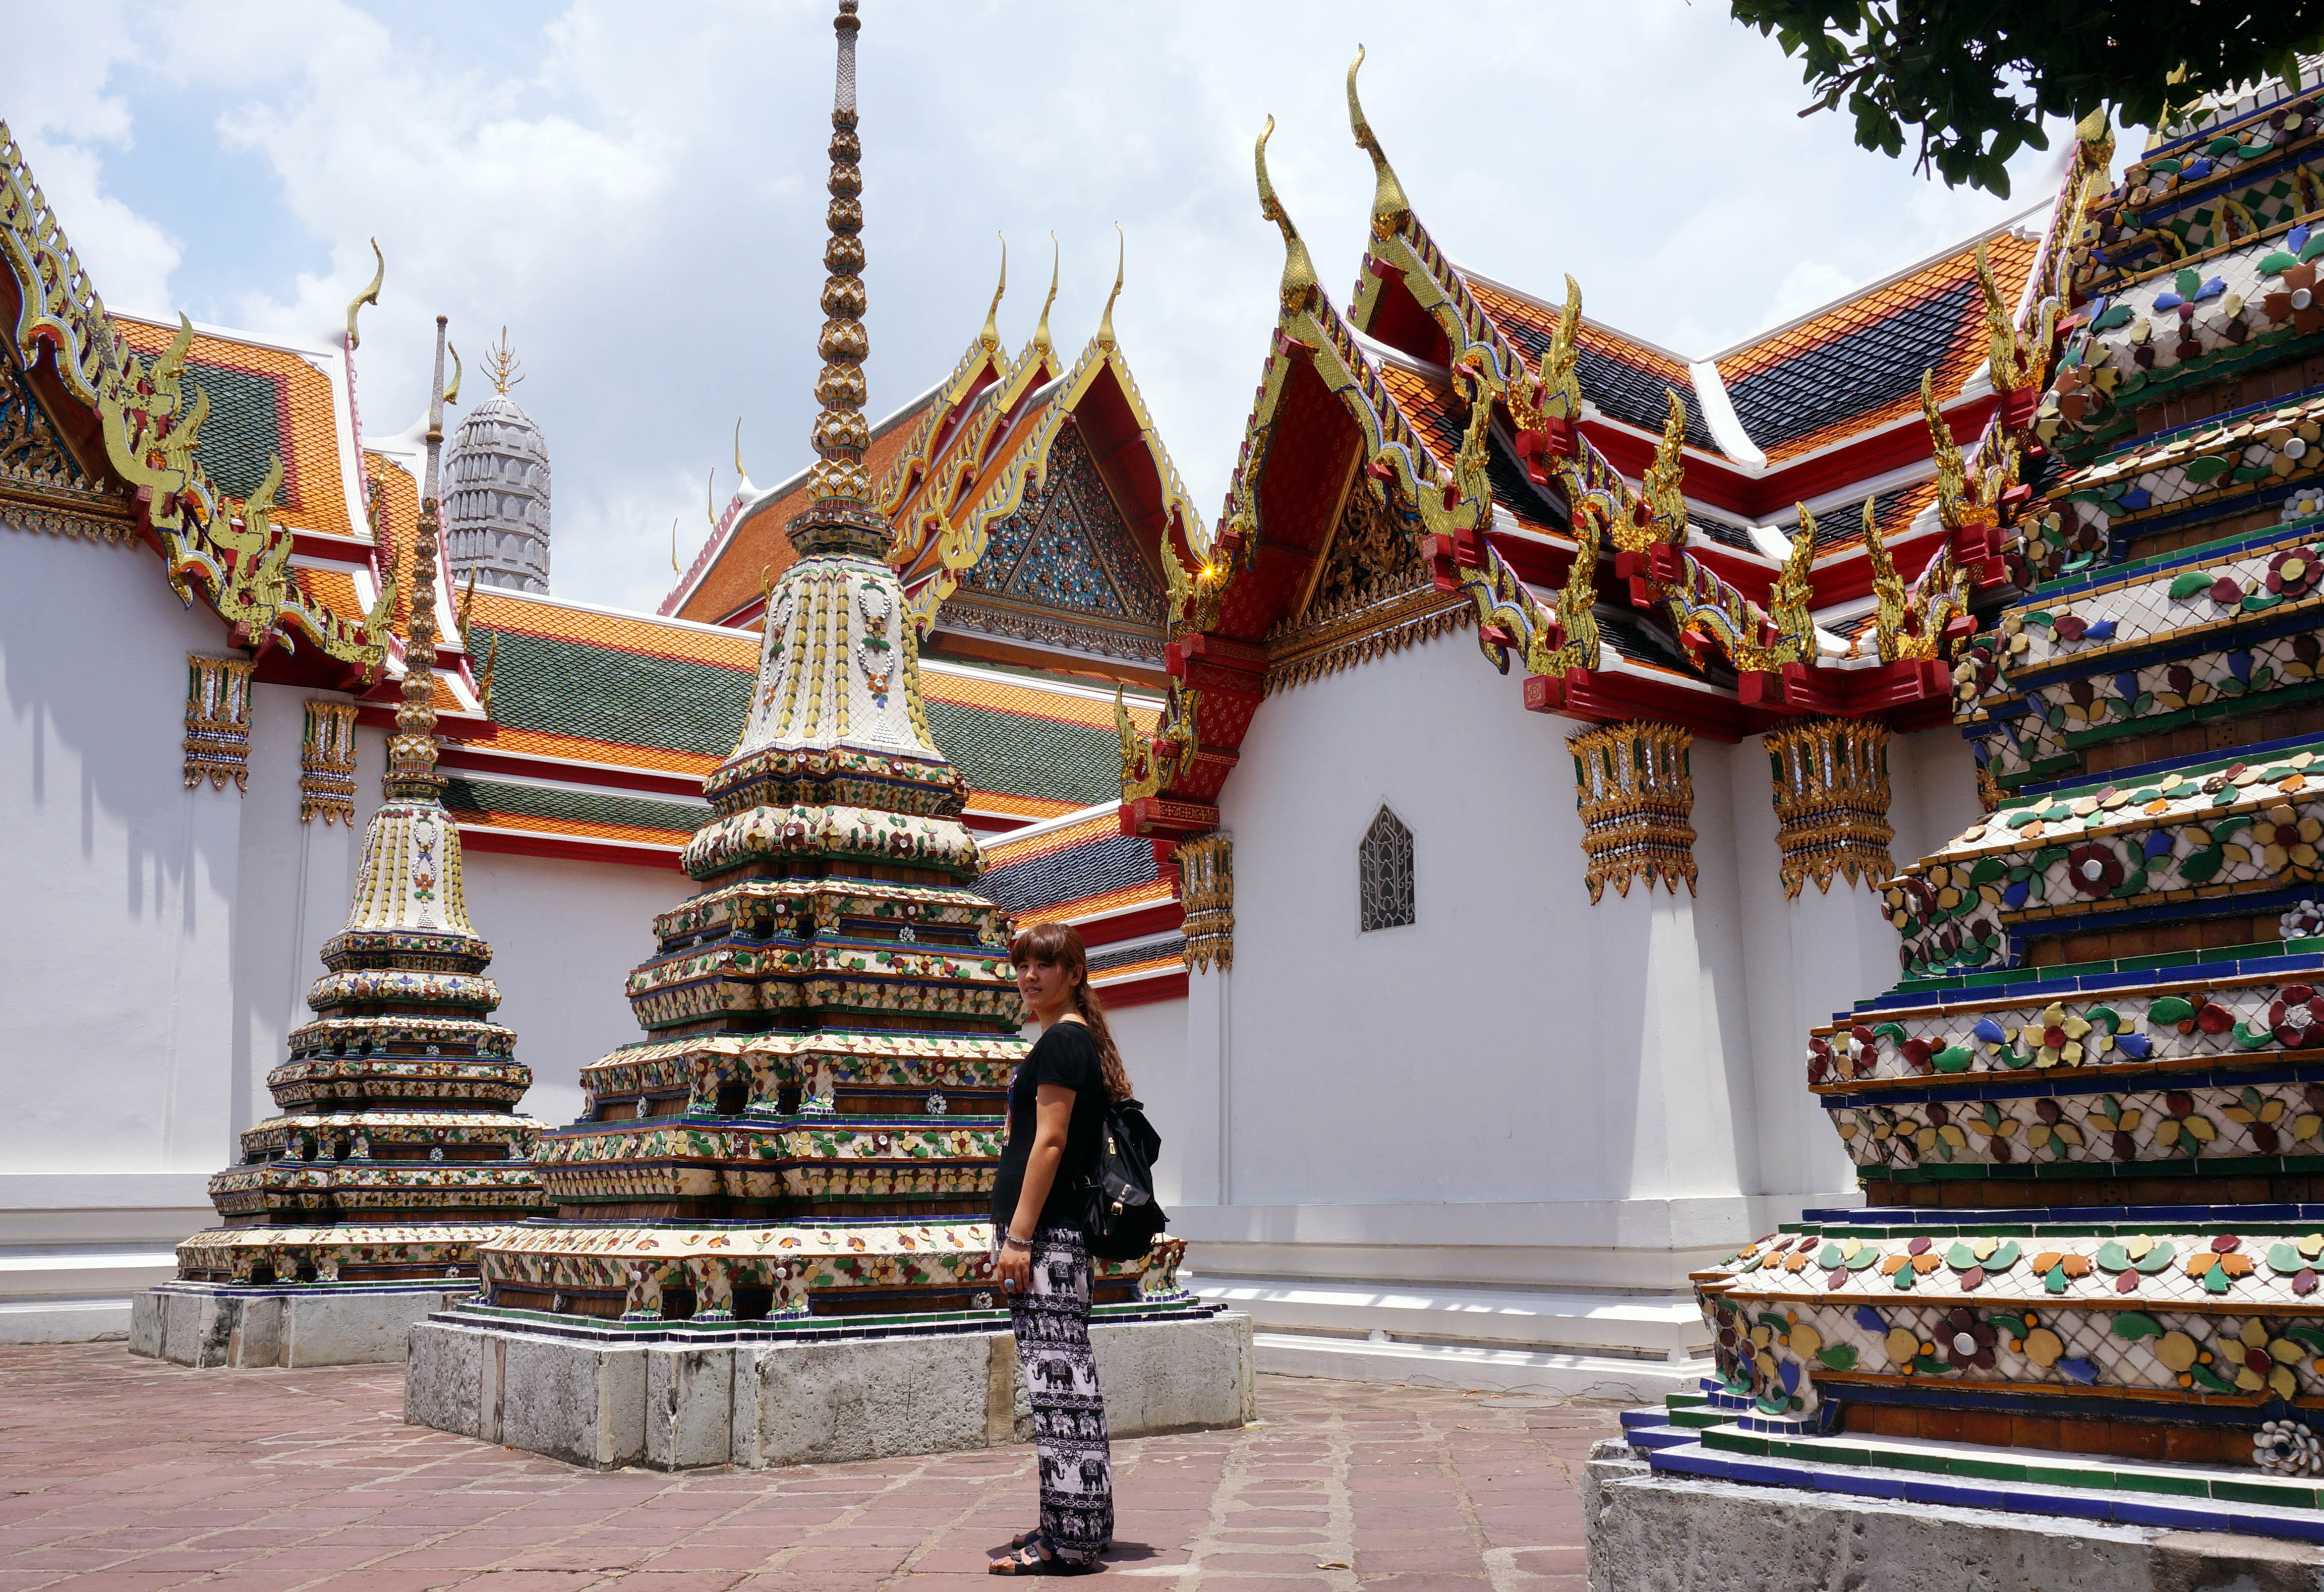 2015年1月24日—泰国—曼谷胜利纪念碑碑和素万纳普机场闲游 - Go Travel